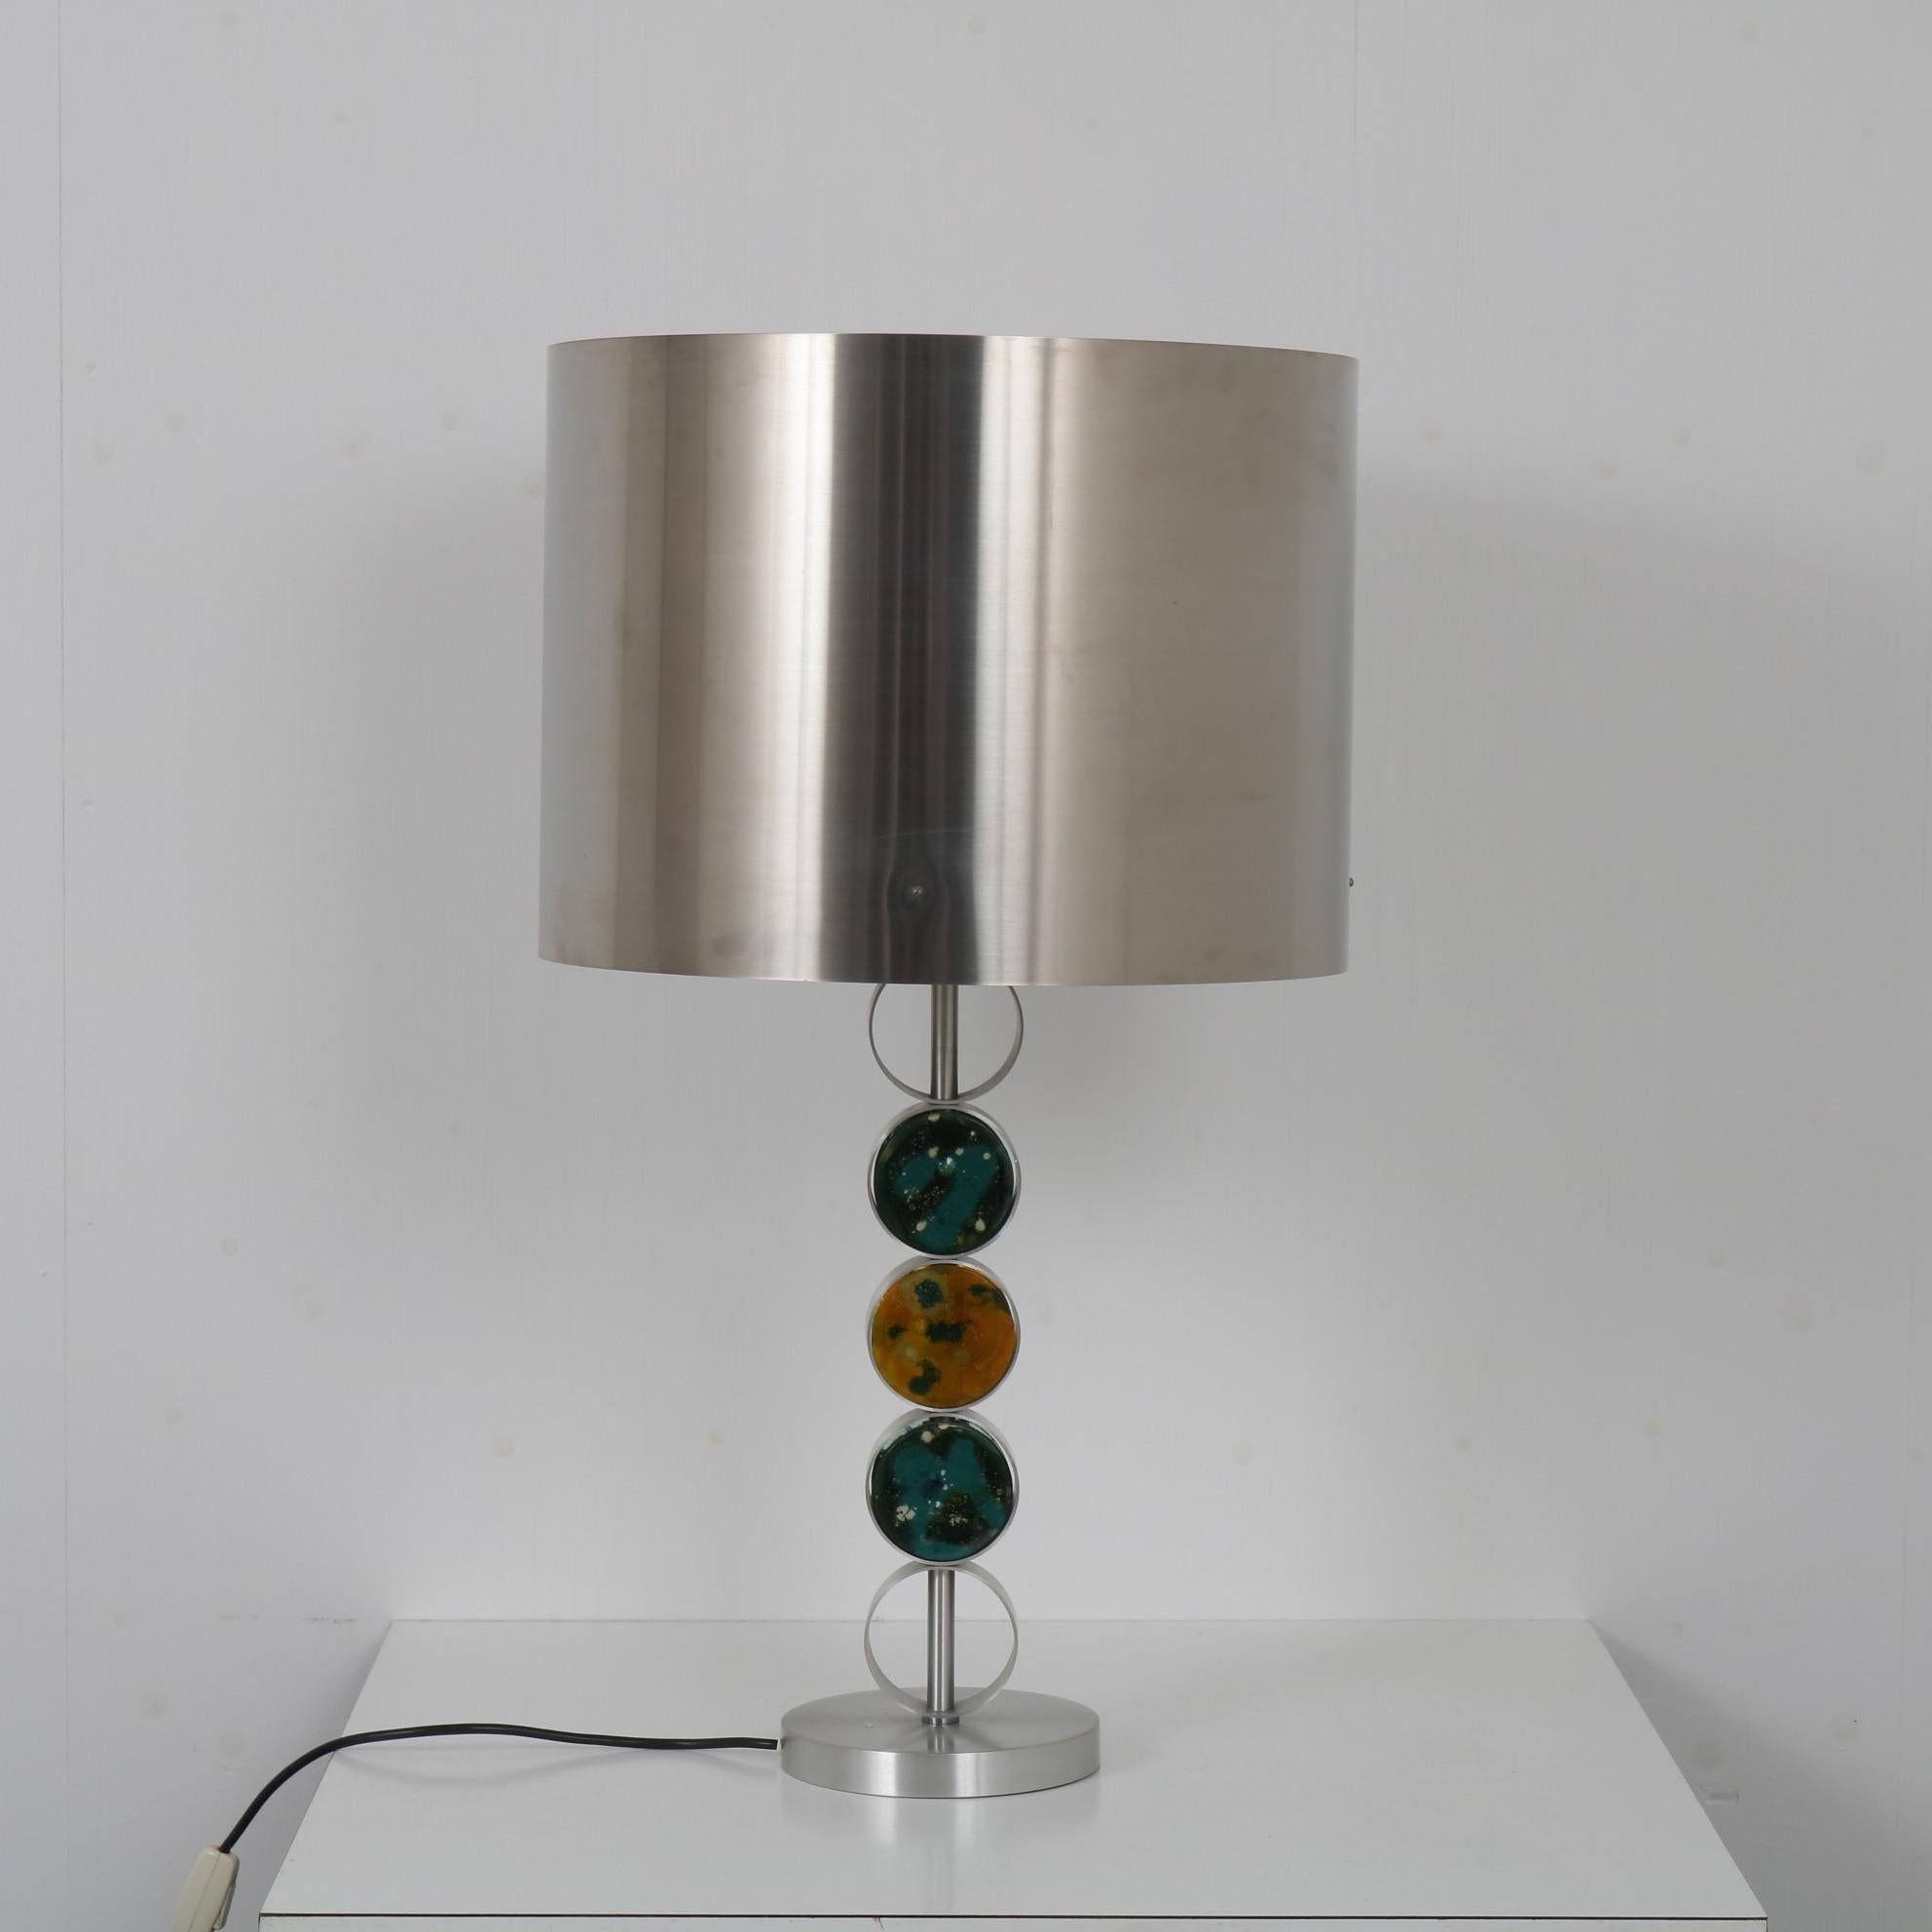 Eine wunderbare Tischlampe, entworfen von Nanny Still, hergestellt von Raak um 1970.

Die Lampe ist wirklich schön aus runden Formen in verchromtem Metall gefertigt. Der runde Fuß hält einen Zylinderarm und eine zylinderförmige Haube. Der Arm ist